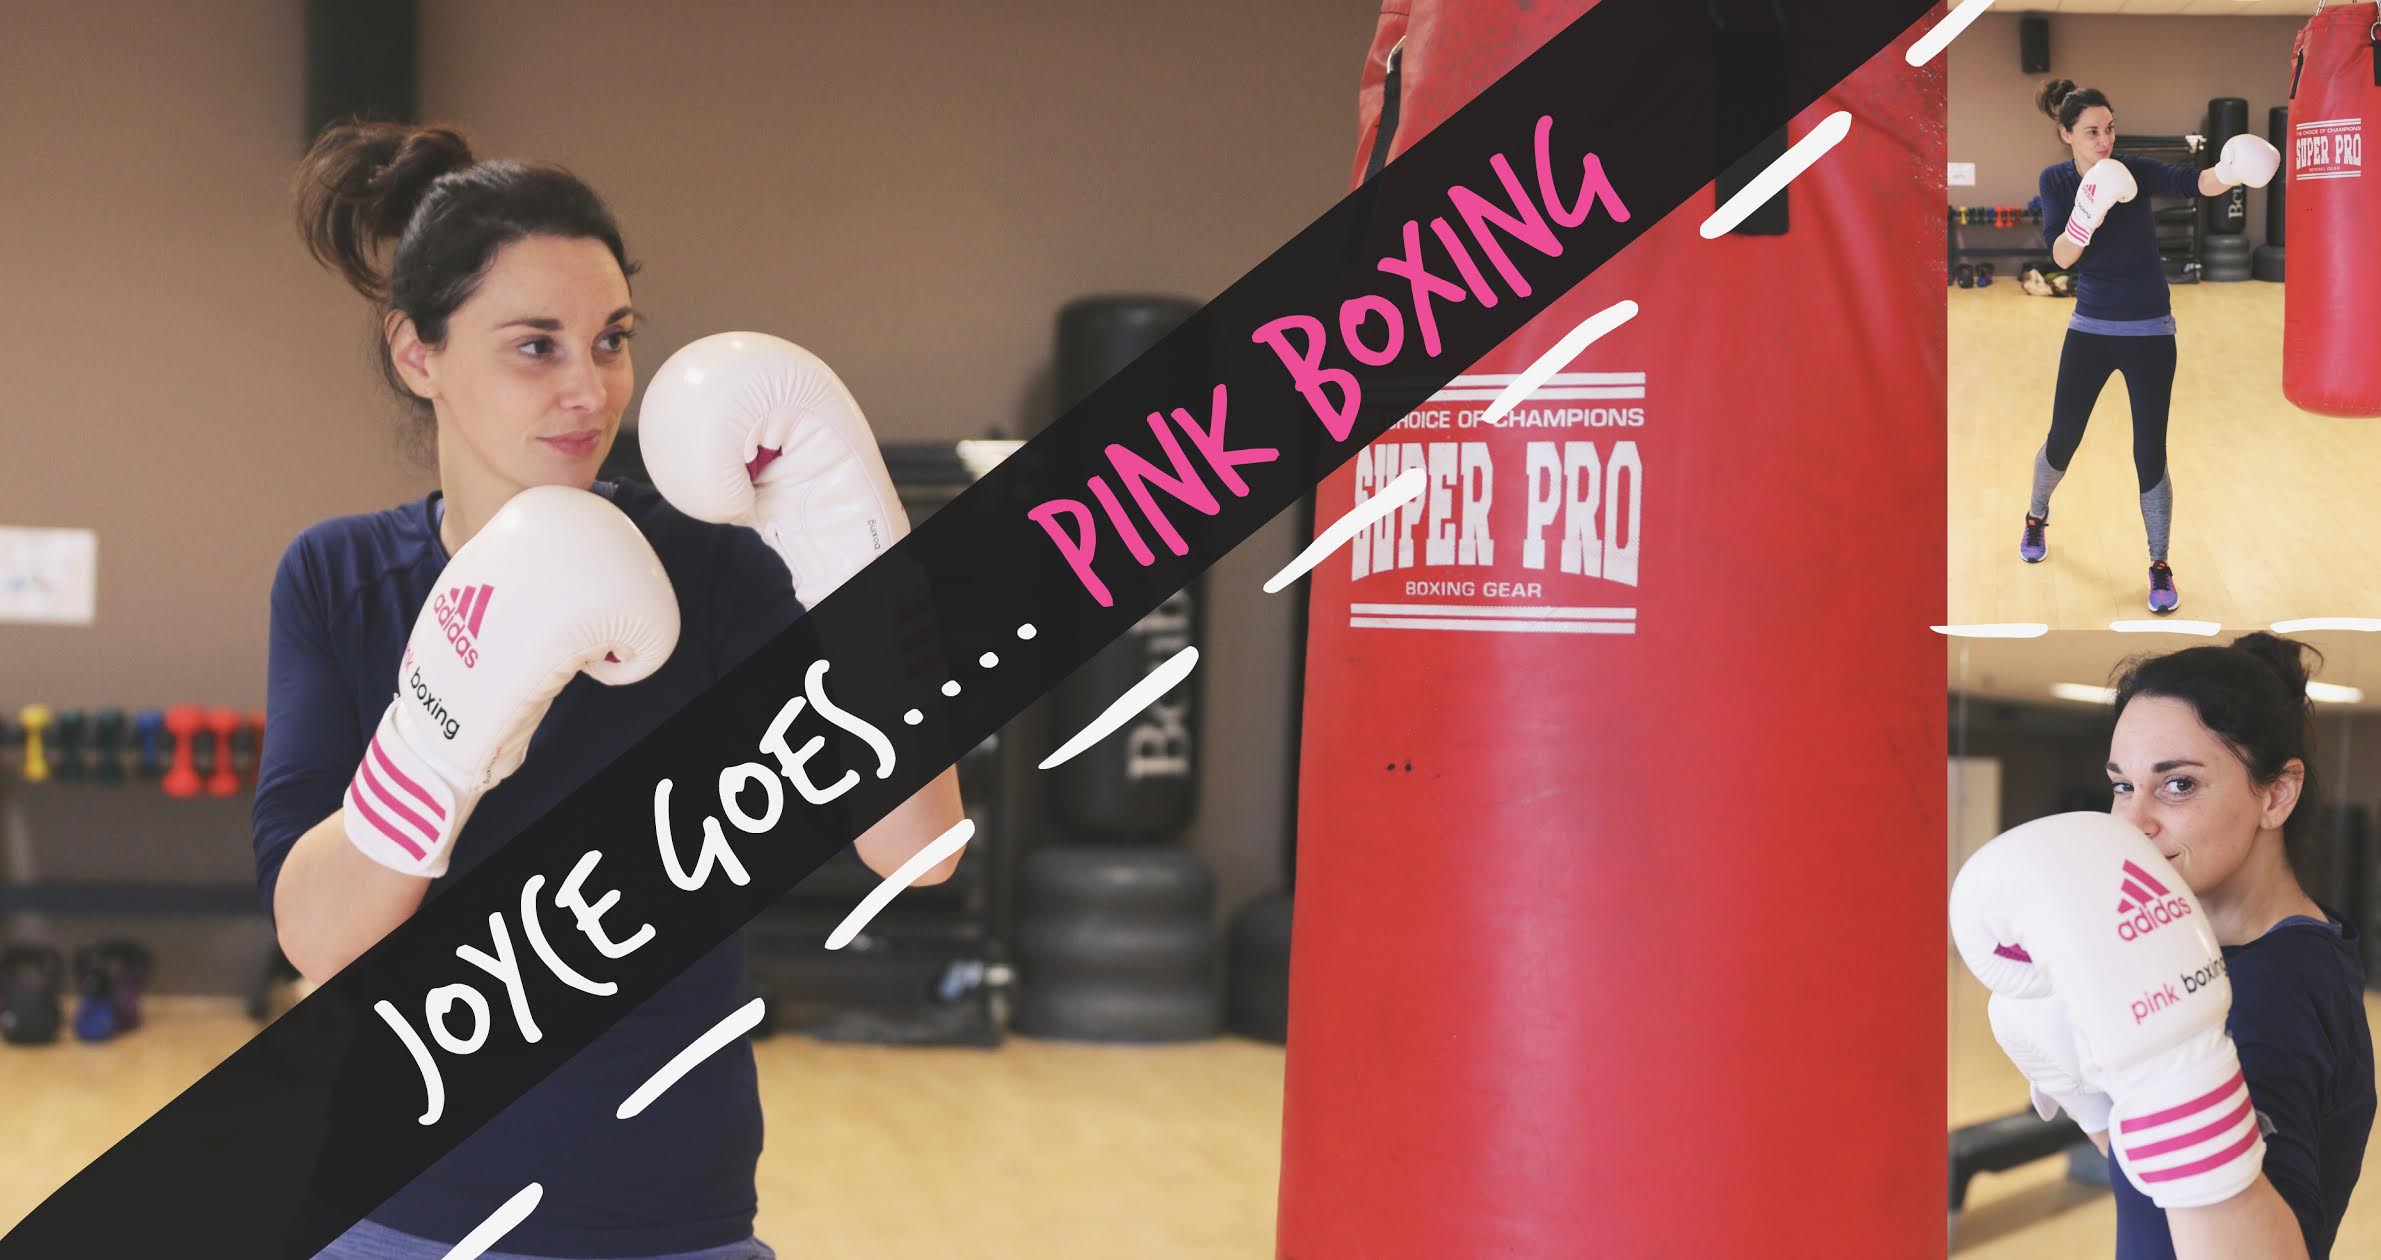 Pink boxing: Boksen voor vrouwen?